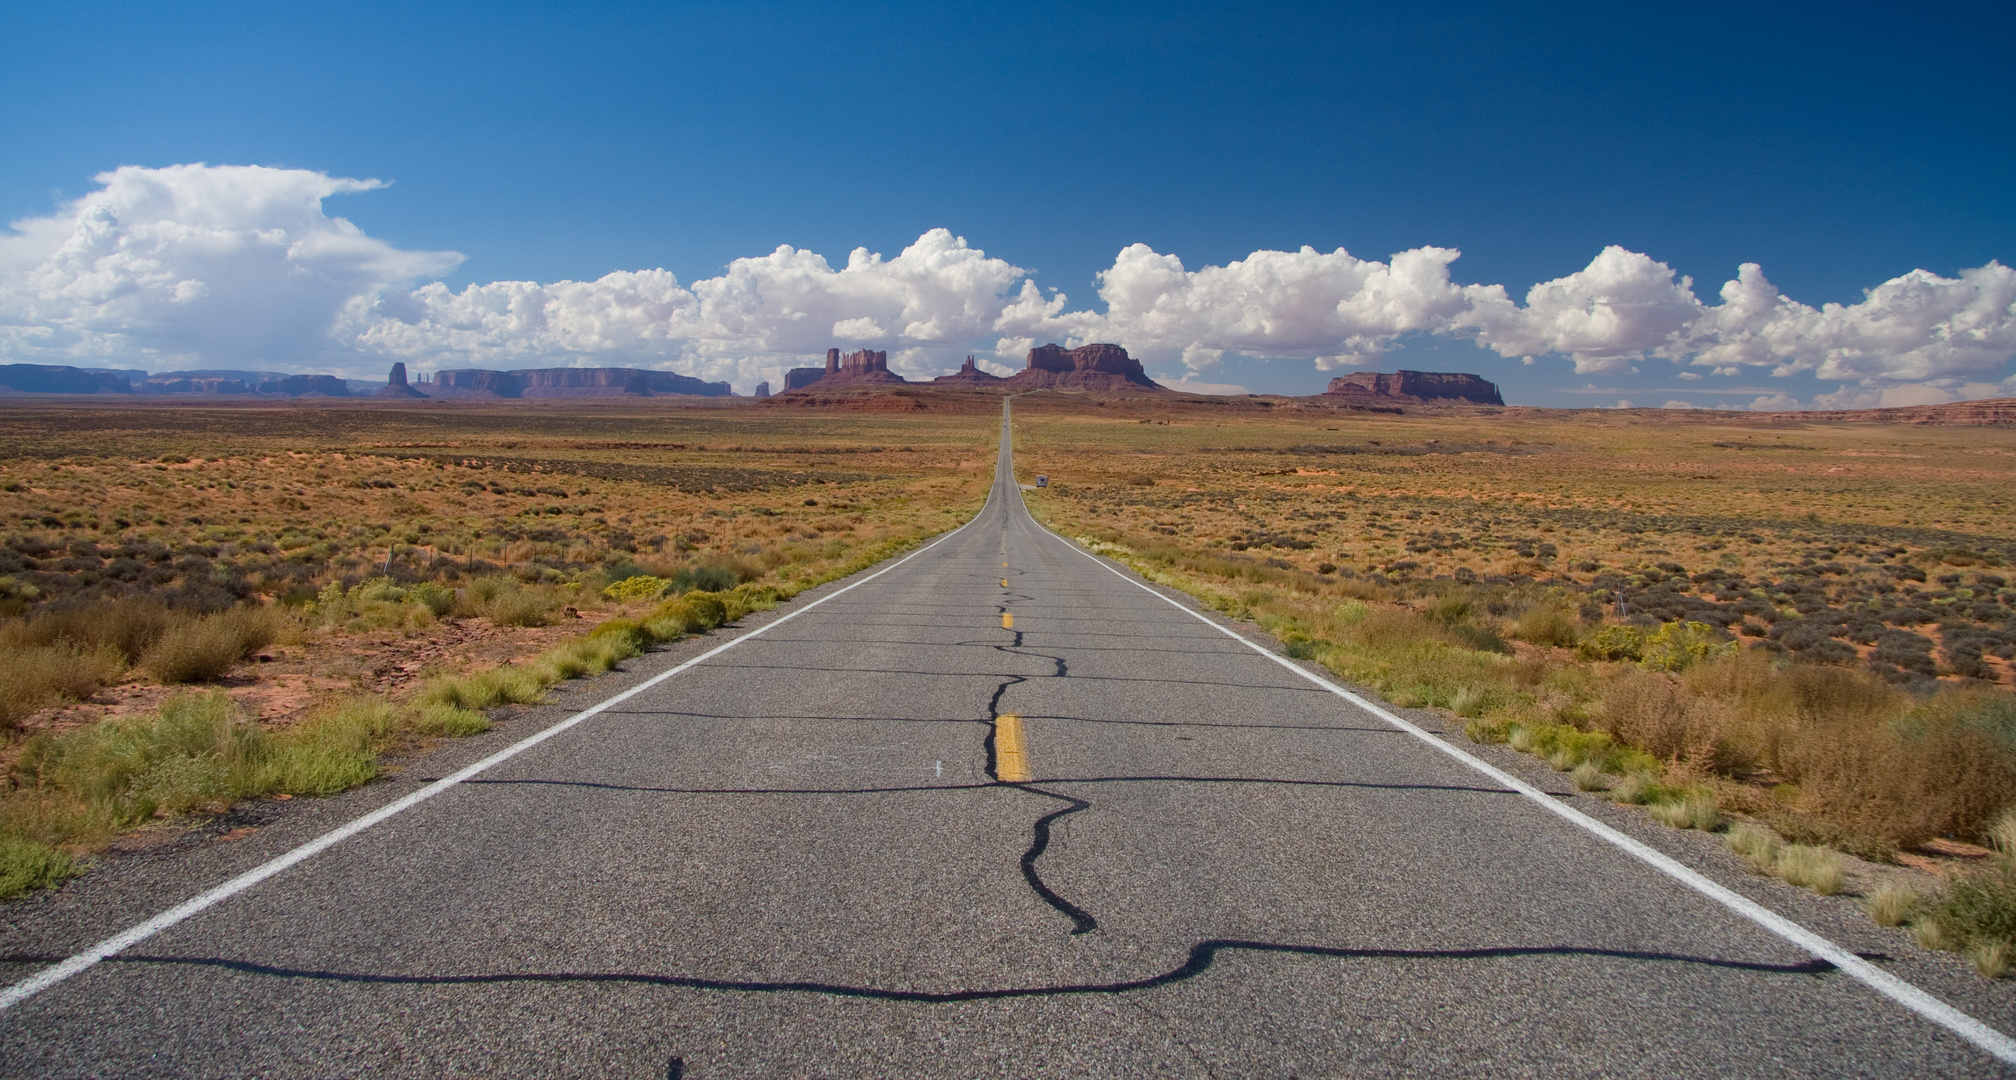 Wild Wild West, "Highway-Blick" auf's Monument Valley